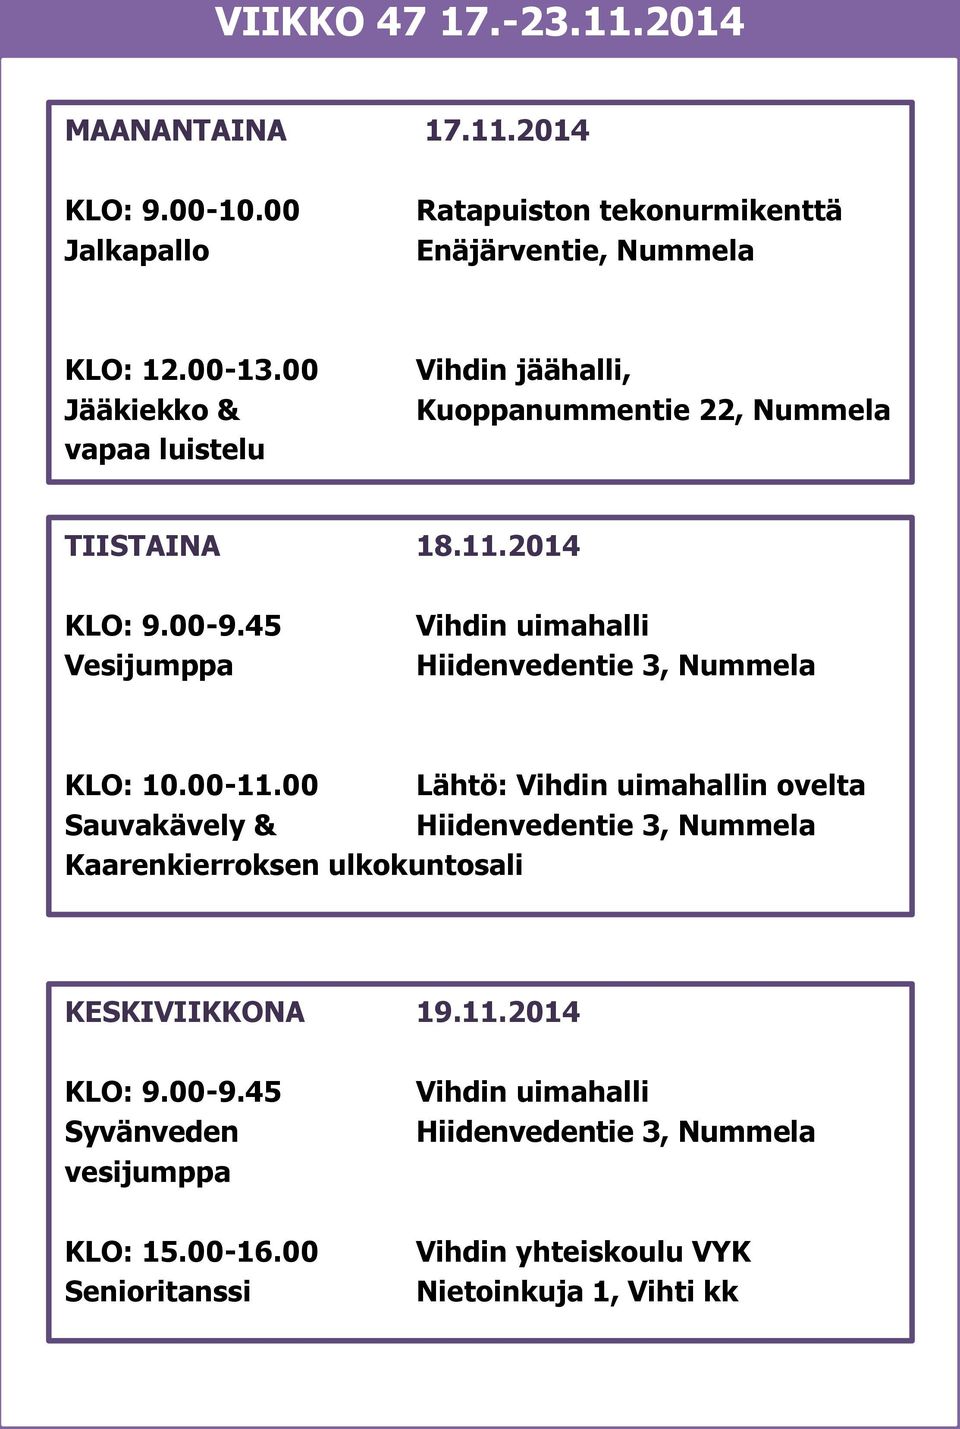 00 Jääkiekko & vapaa luistelu Vihdin jäähalli, Kuoppanummentie 22, Nummela TIISTAINA 18.11.2014 KLO: 9.00-9.